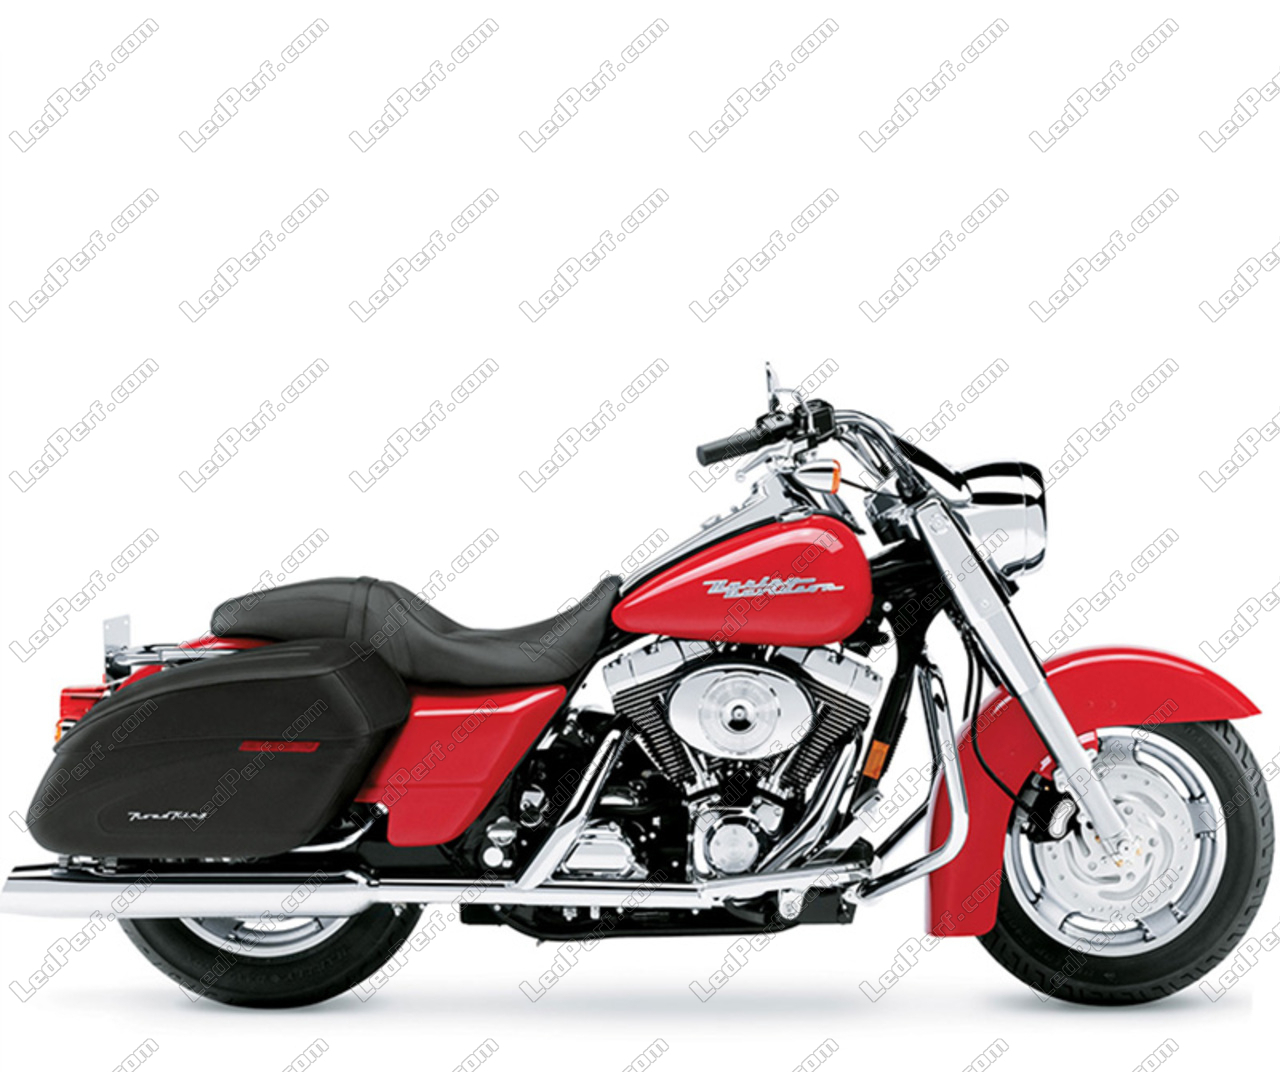 Scheinwerferlampen Pack Mit Xenon Effekt Fur Harley Davidson Road King Custom 1450